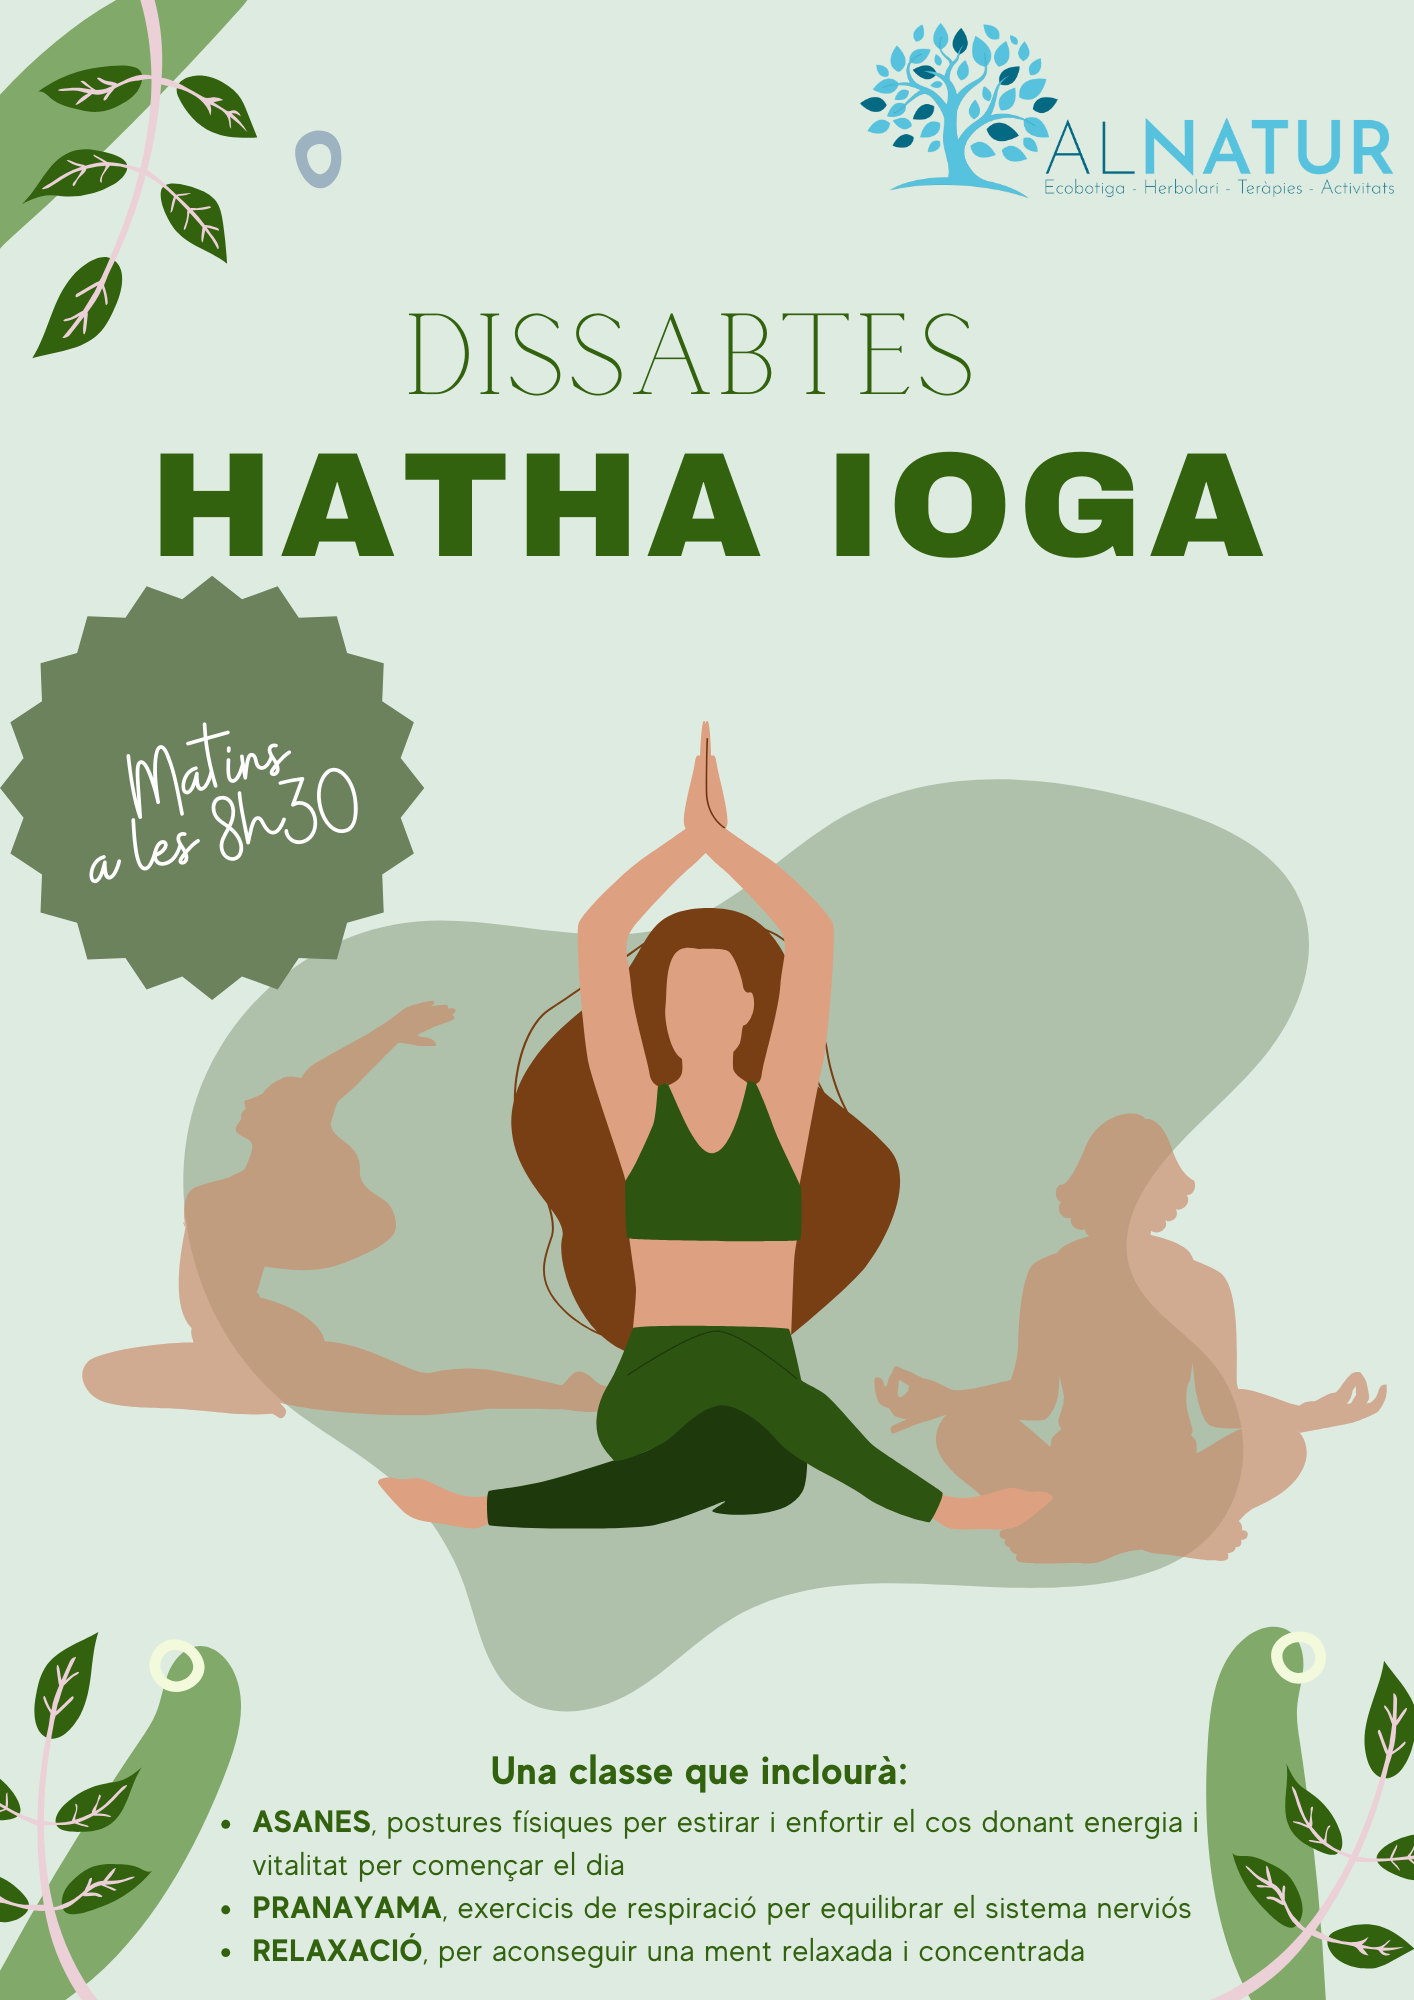 Nou Grup de Hatha Ioga els dissabtes de 8h30 a 9h30